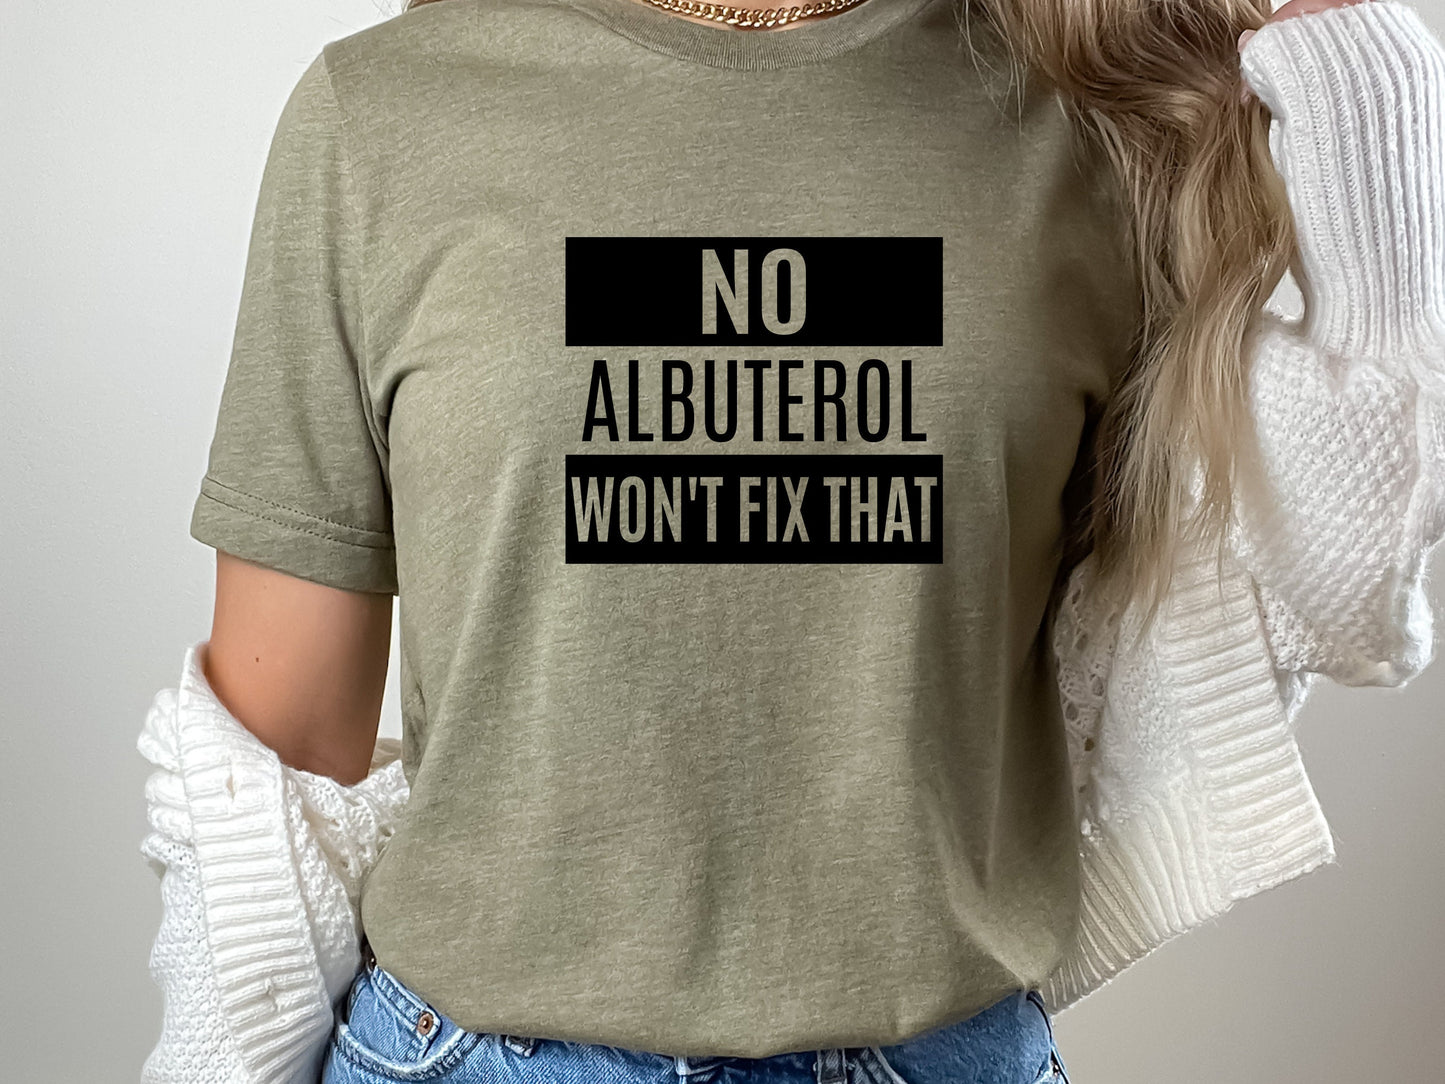 no albuterol won't fix that, respiratory therapy shirt, pulmonary shirt, lung shirt, pulmonary nurse, pulmonlogist shirt, rt shirts